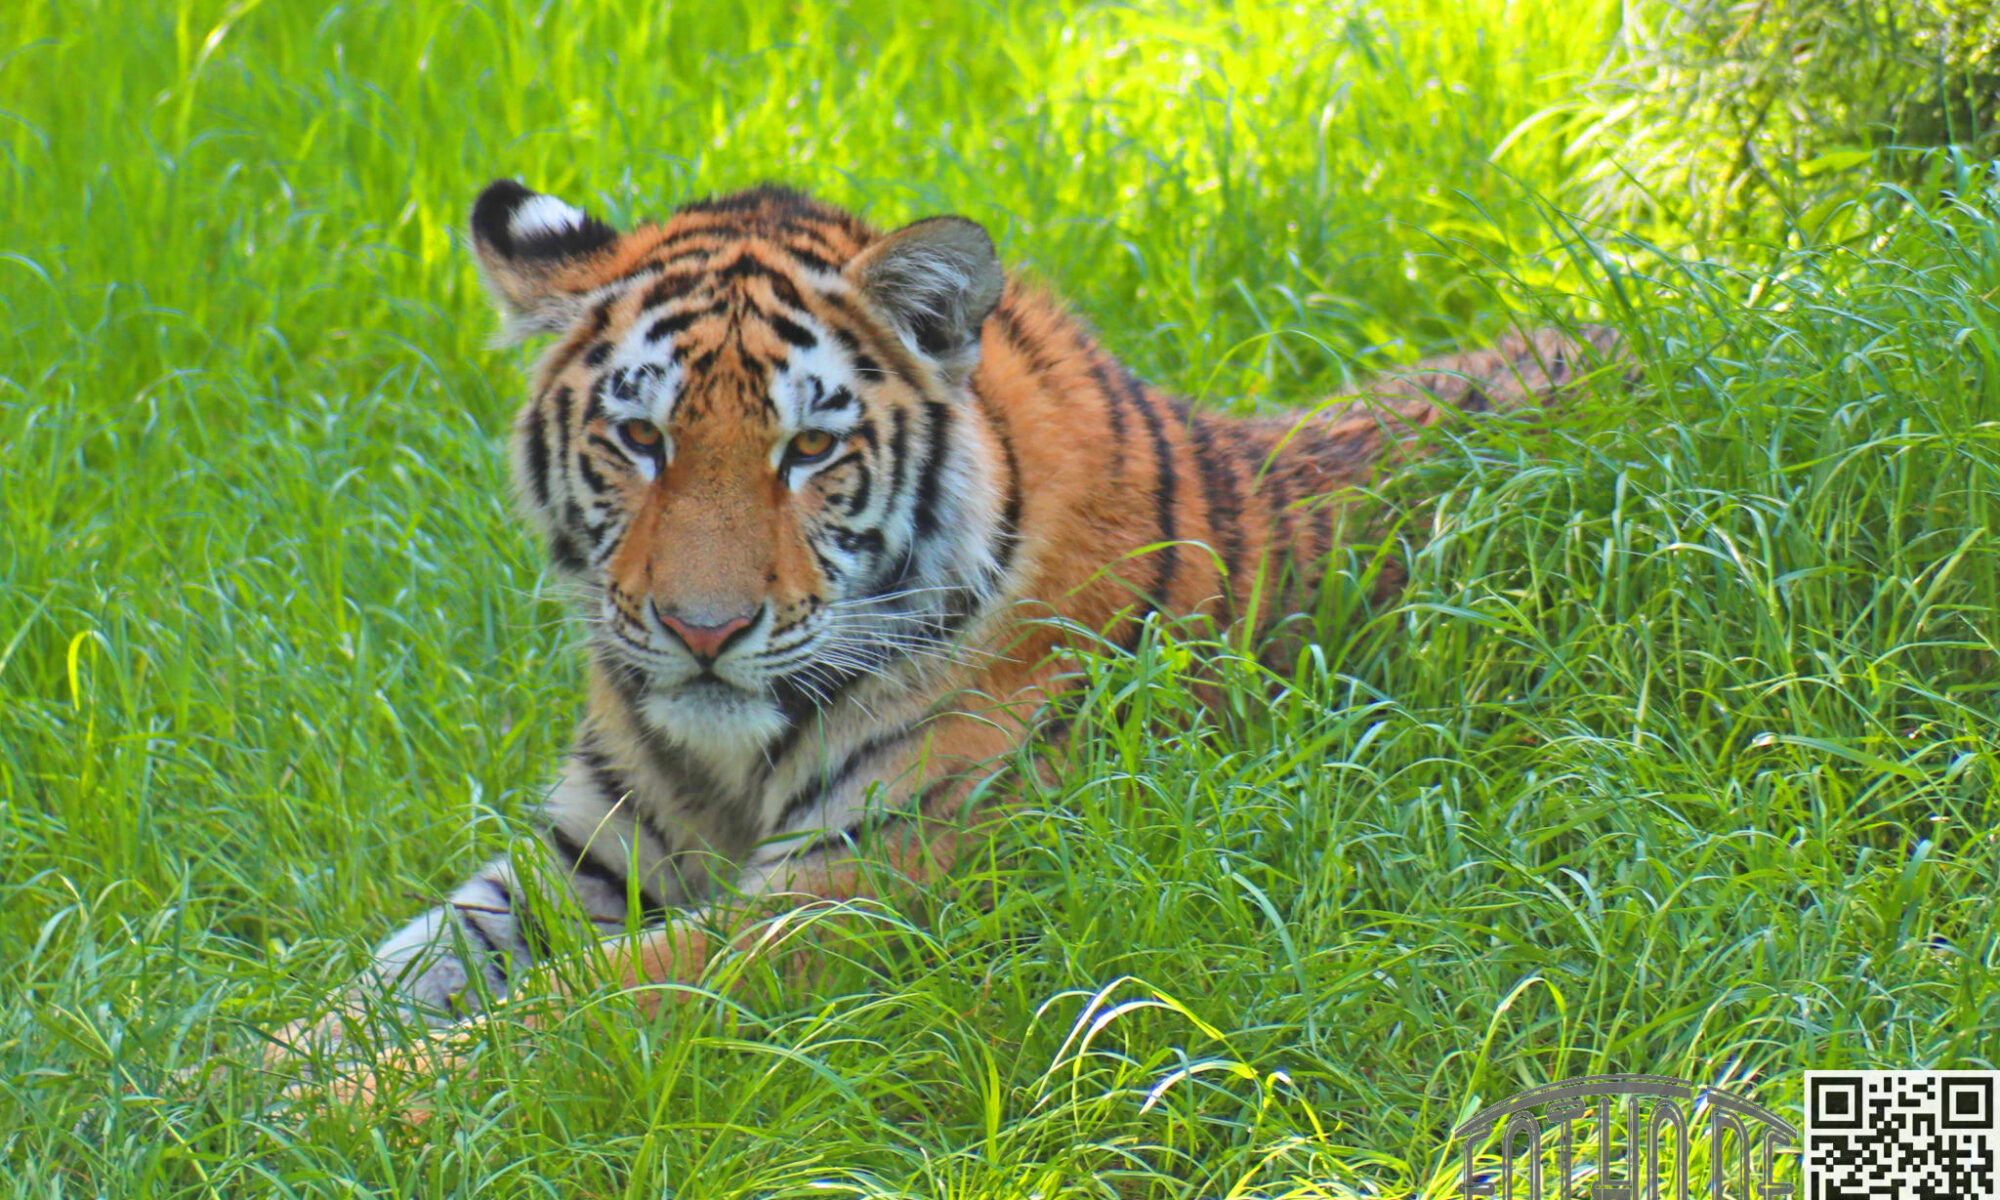 Tiger im Gras Zoo Duisburg FOTHO IMG0110B